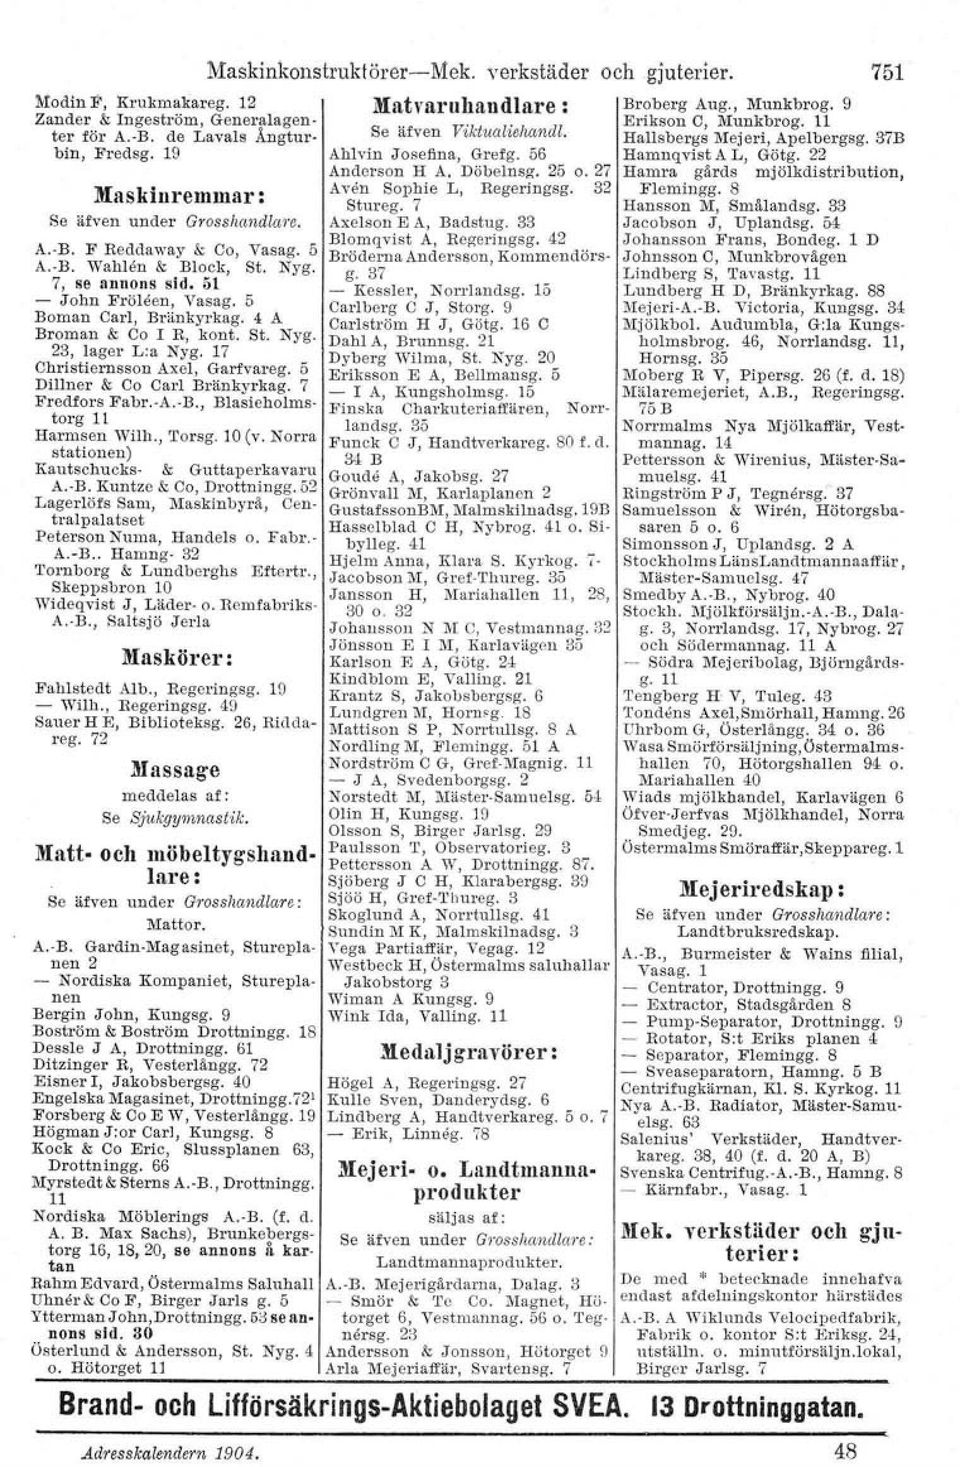 F Reddaway & Co, Vasag. 5 A.-B. Wah'len & Block, St. Nyg. 7, se annons sid. 51 - John Fröleen, Vasag. 5 Boman Carl, Bränkyrkag. 4 A Broman & Co I R, kont. St. Nyg. 23, lager L:a Nyg.